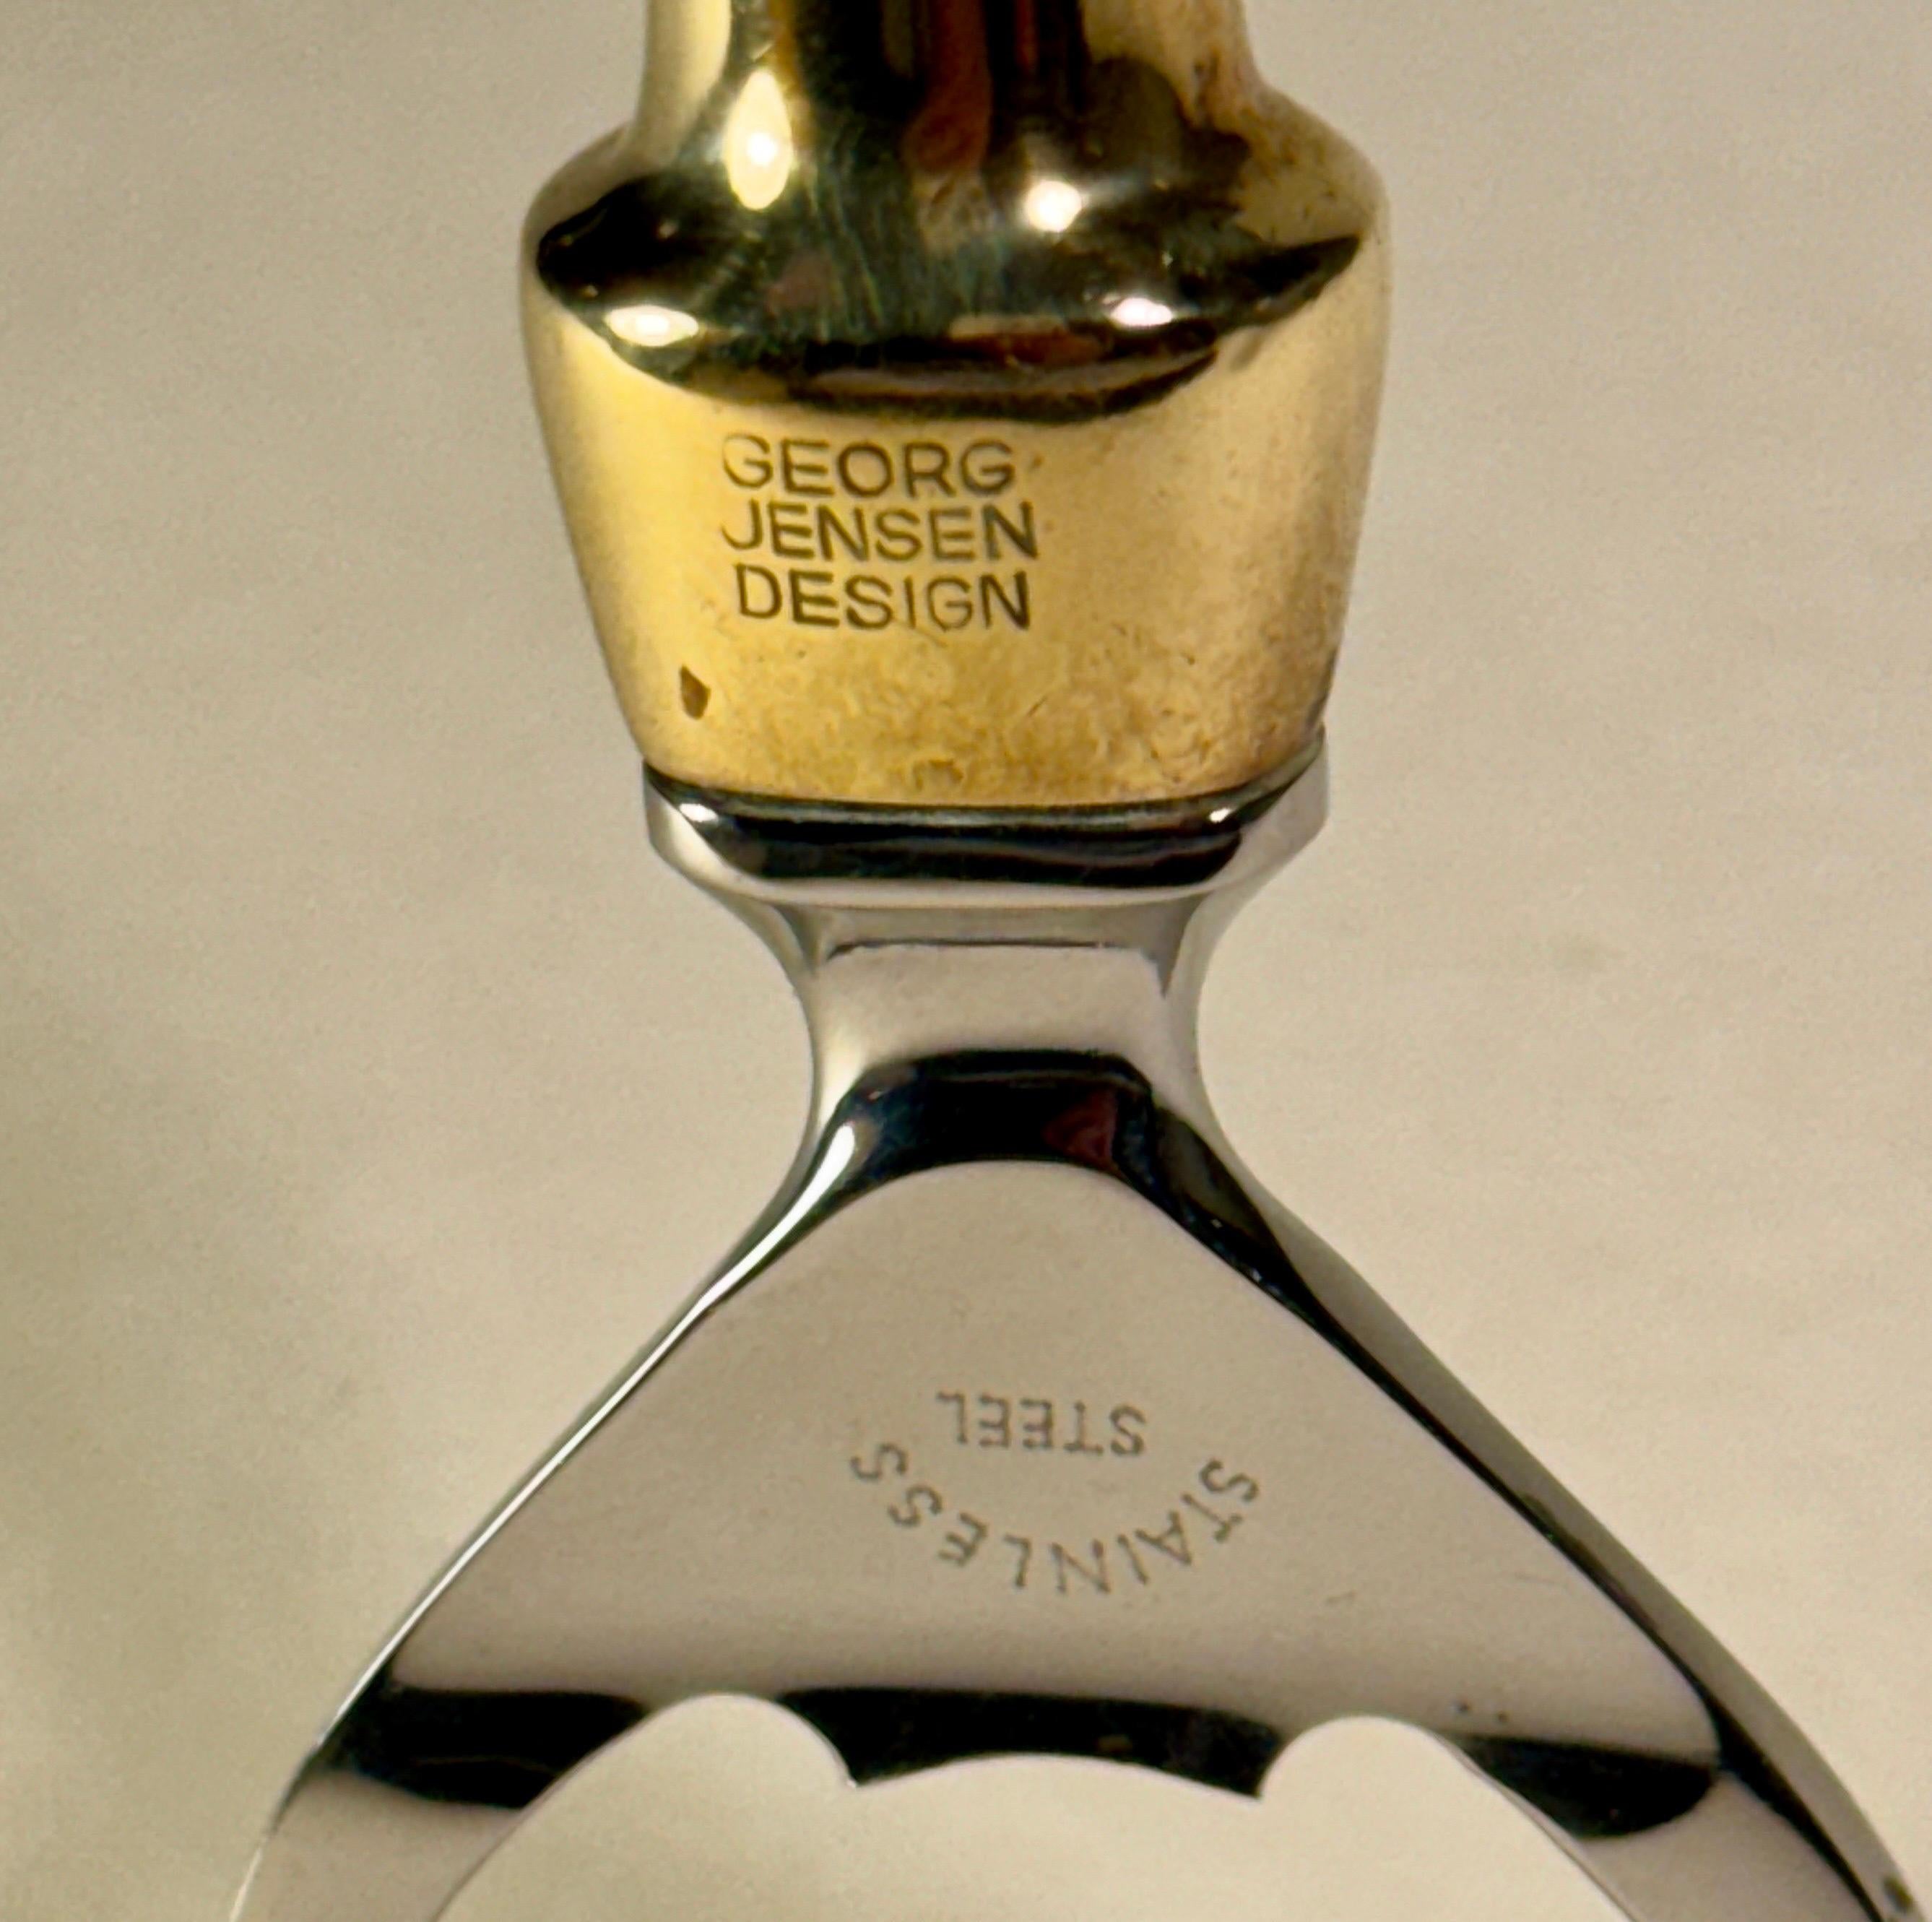 Danish Mid Century Modern Bottle Opener in Classic Scandinavian Design by Henning Koppel for Georg Jensen Design